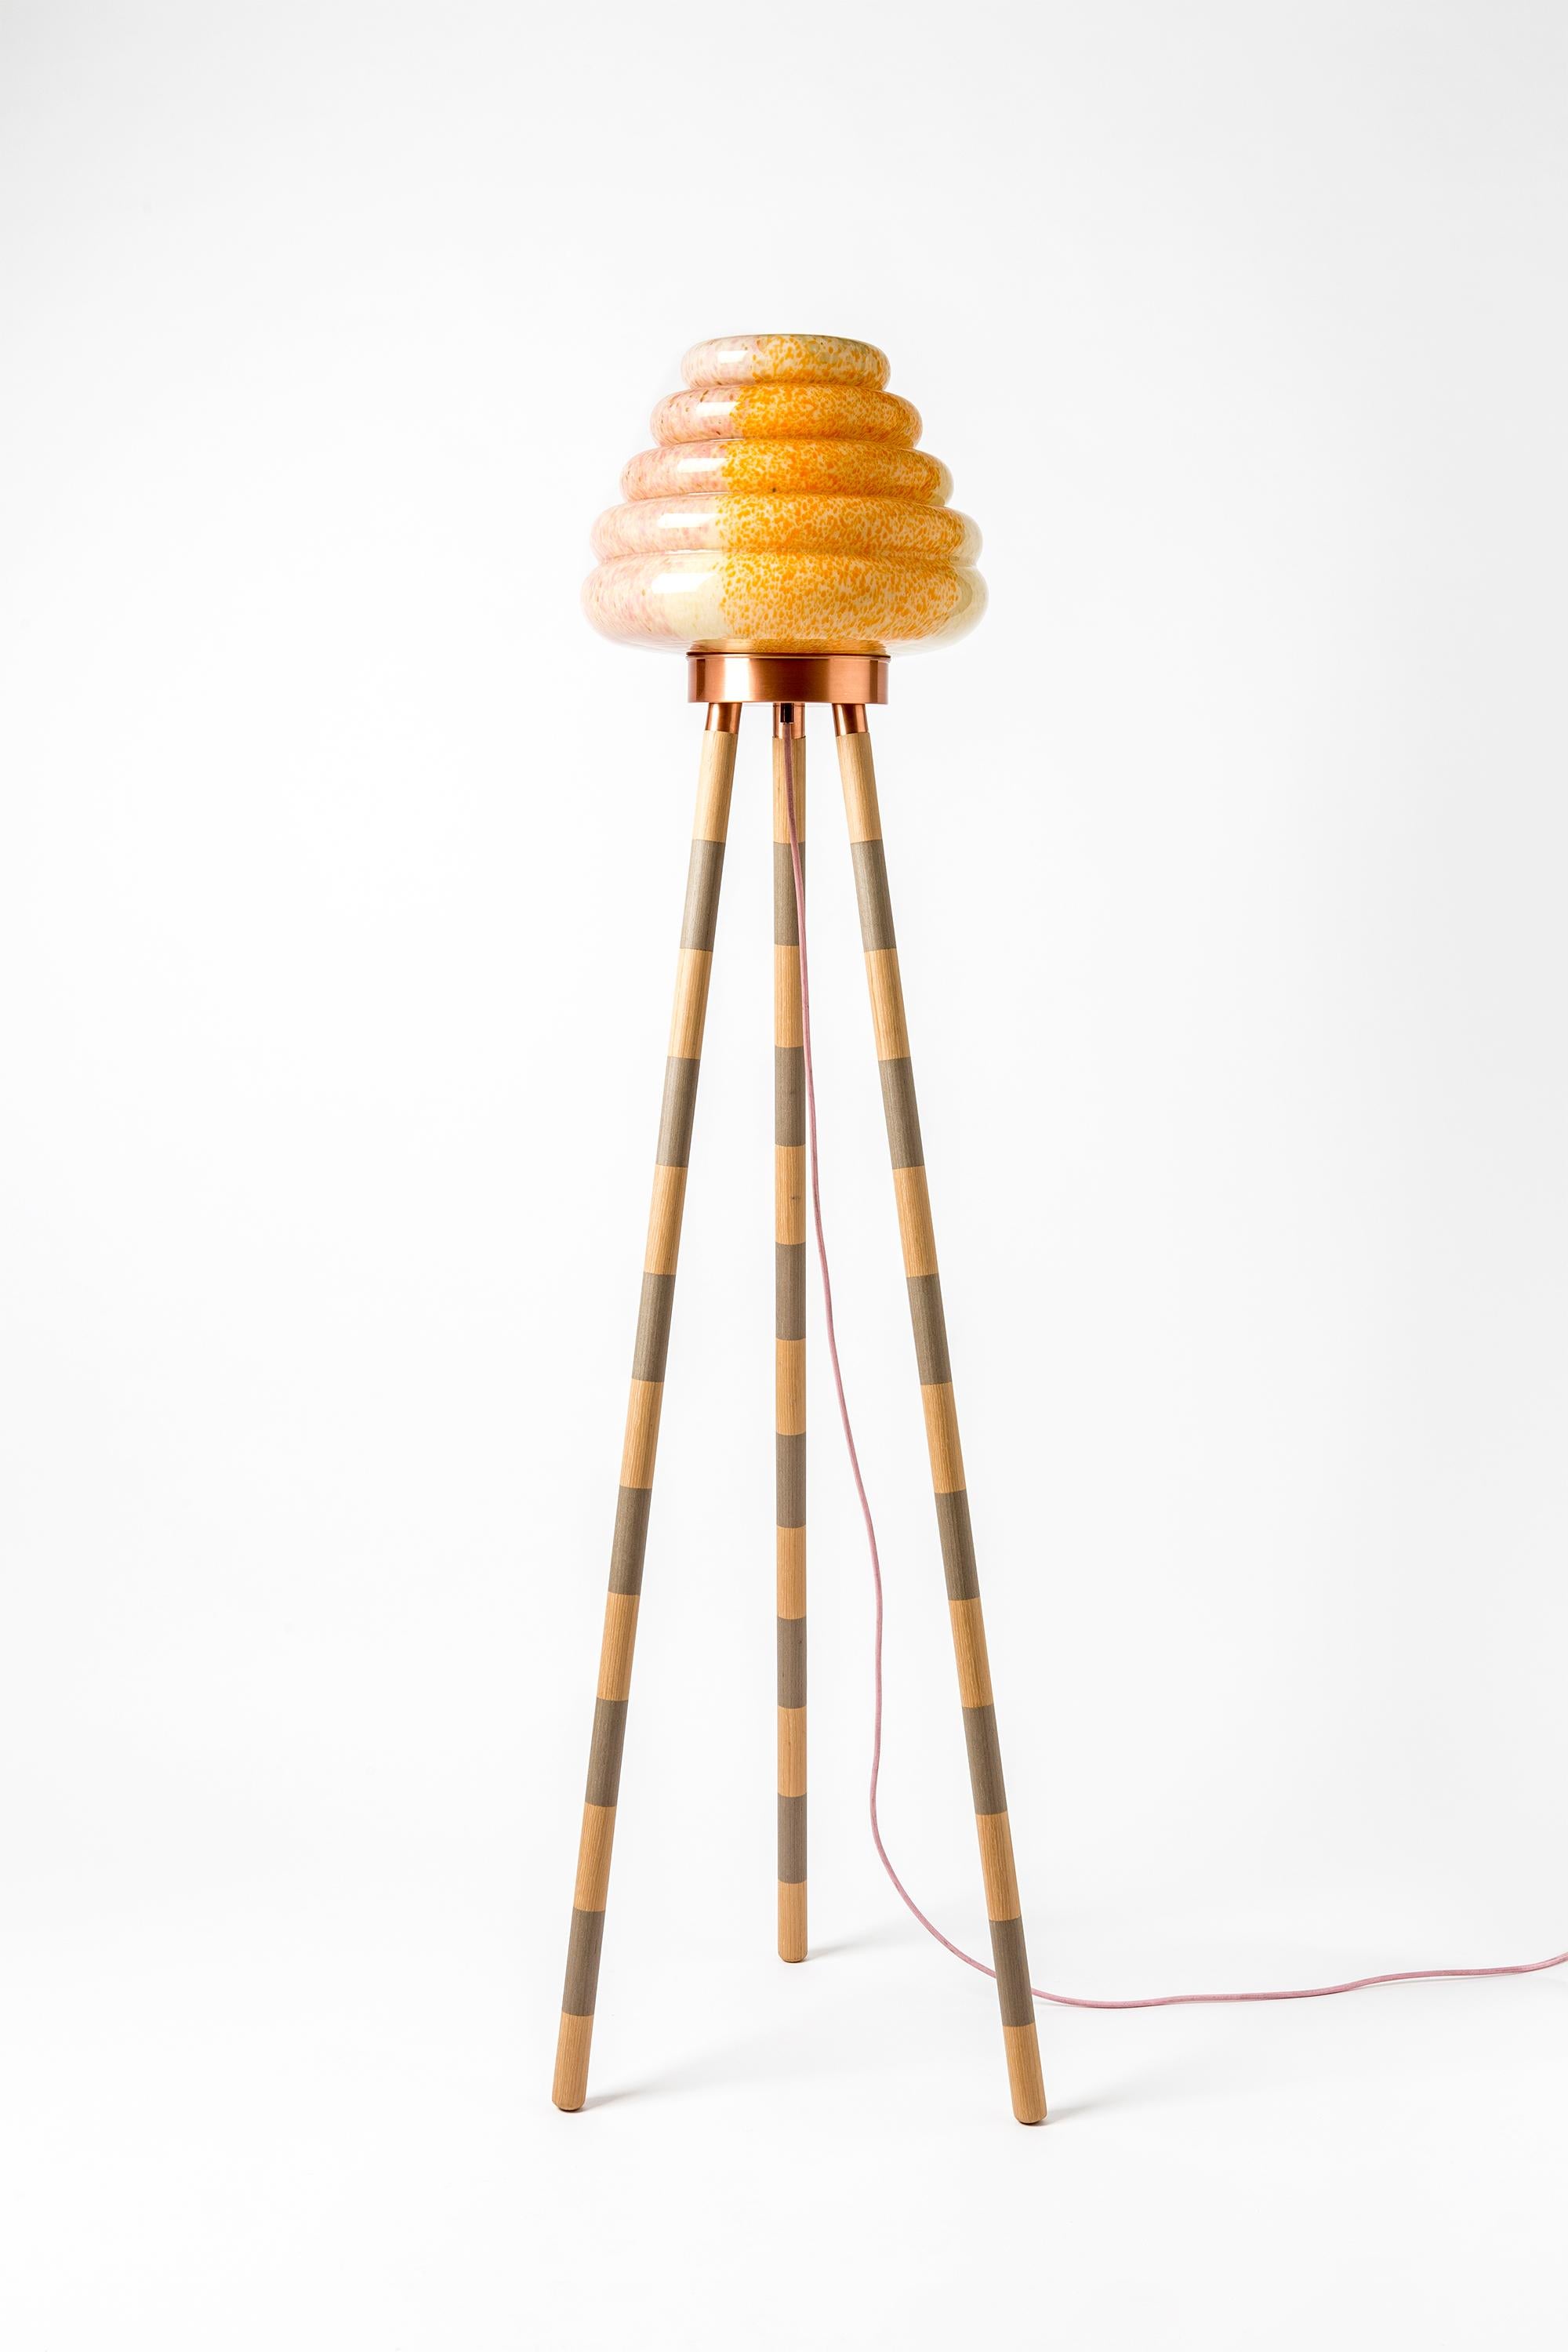 Ce lampadaire inspiré d'une ruche comprend un abat-jour en verre soufflé à la bouche de couleurs mélangées et différentes combinaisons de pieds en placage de bois et de cuivre. La lumière est réglable par le variateur. Chaque pièce est unique et